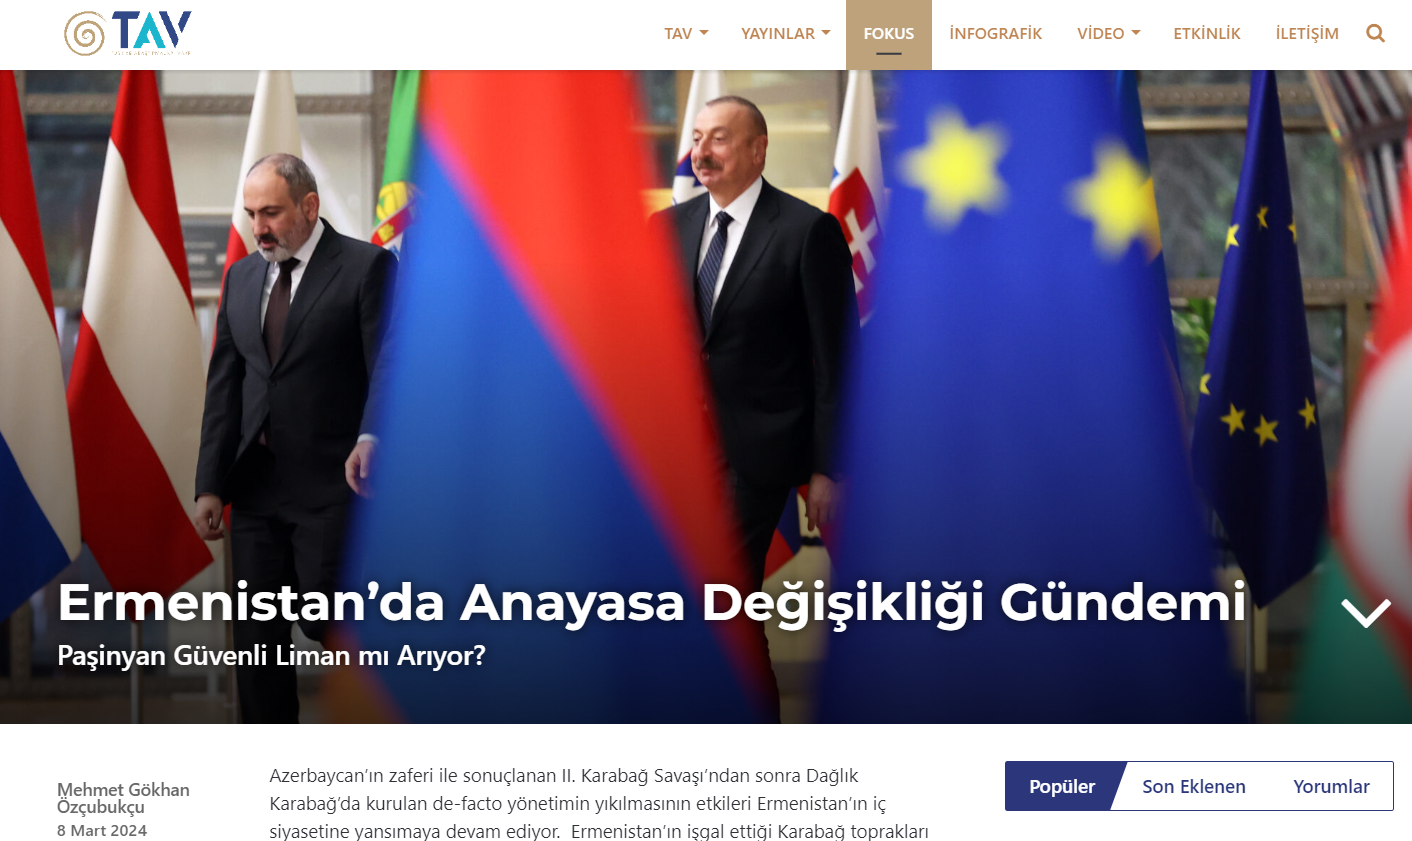 TUDPAM Uzmanı Özçubukçu’nun Analizi Türkiye Araştırmaları Vakfı’nda Yayınlandı